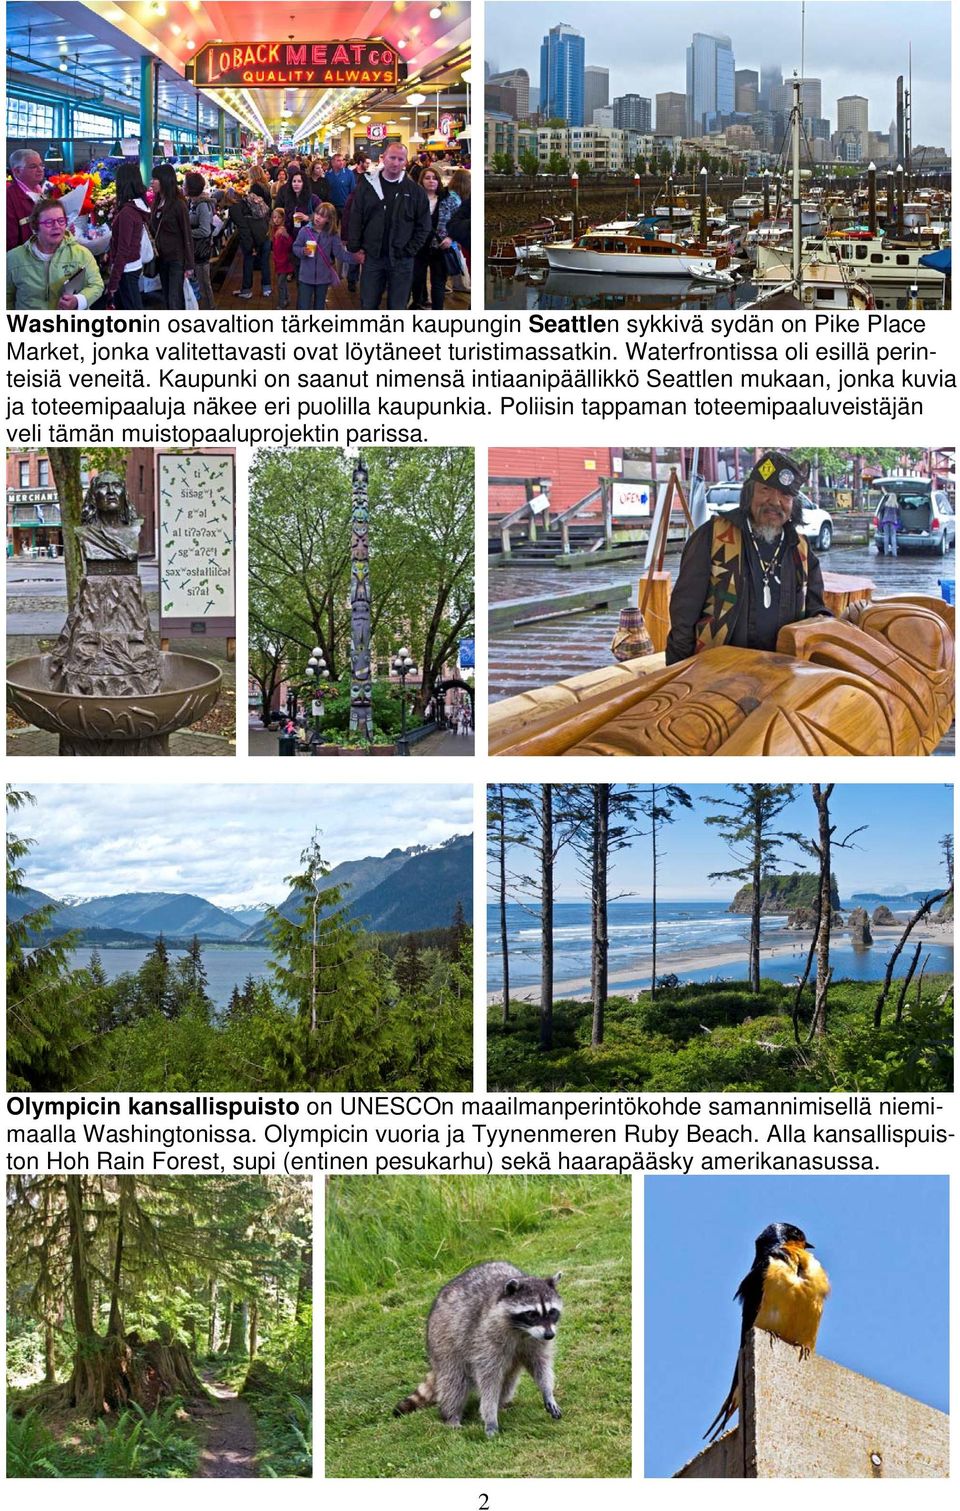 Kaupunki on saanut nimensä intiaanipäällikkö Seattlen mukaan, jonka kuvia ja toteemipaaluja näkee eri puolilla kaupunkia.